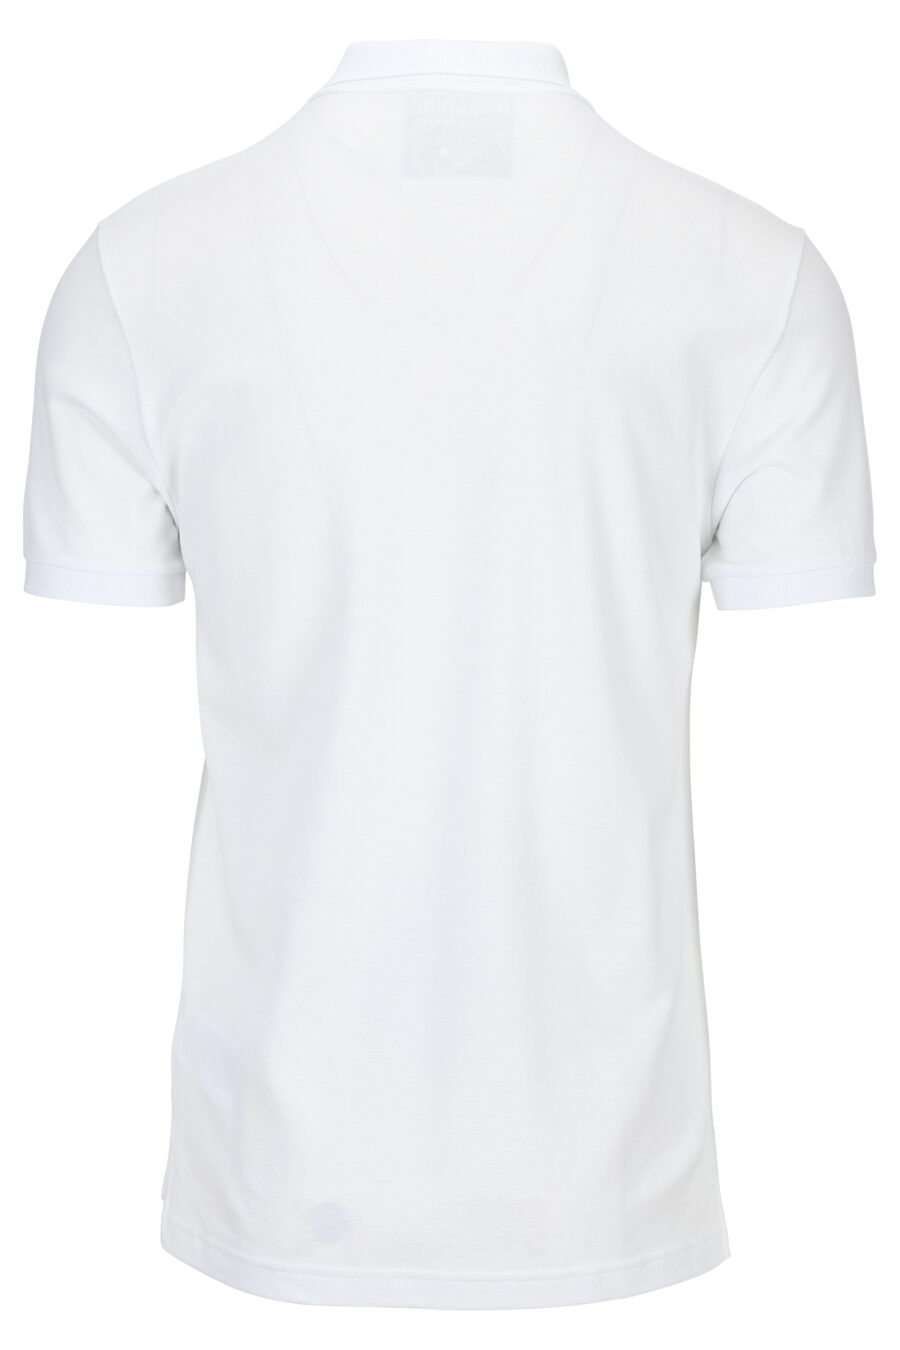 White polo shirt with bear mini logo - 889316660630 1